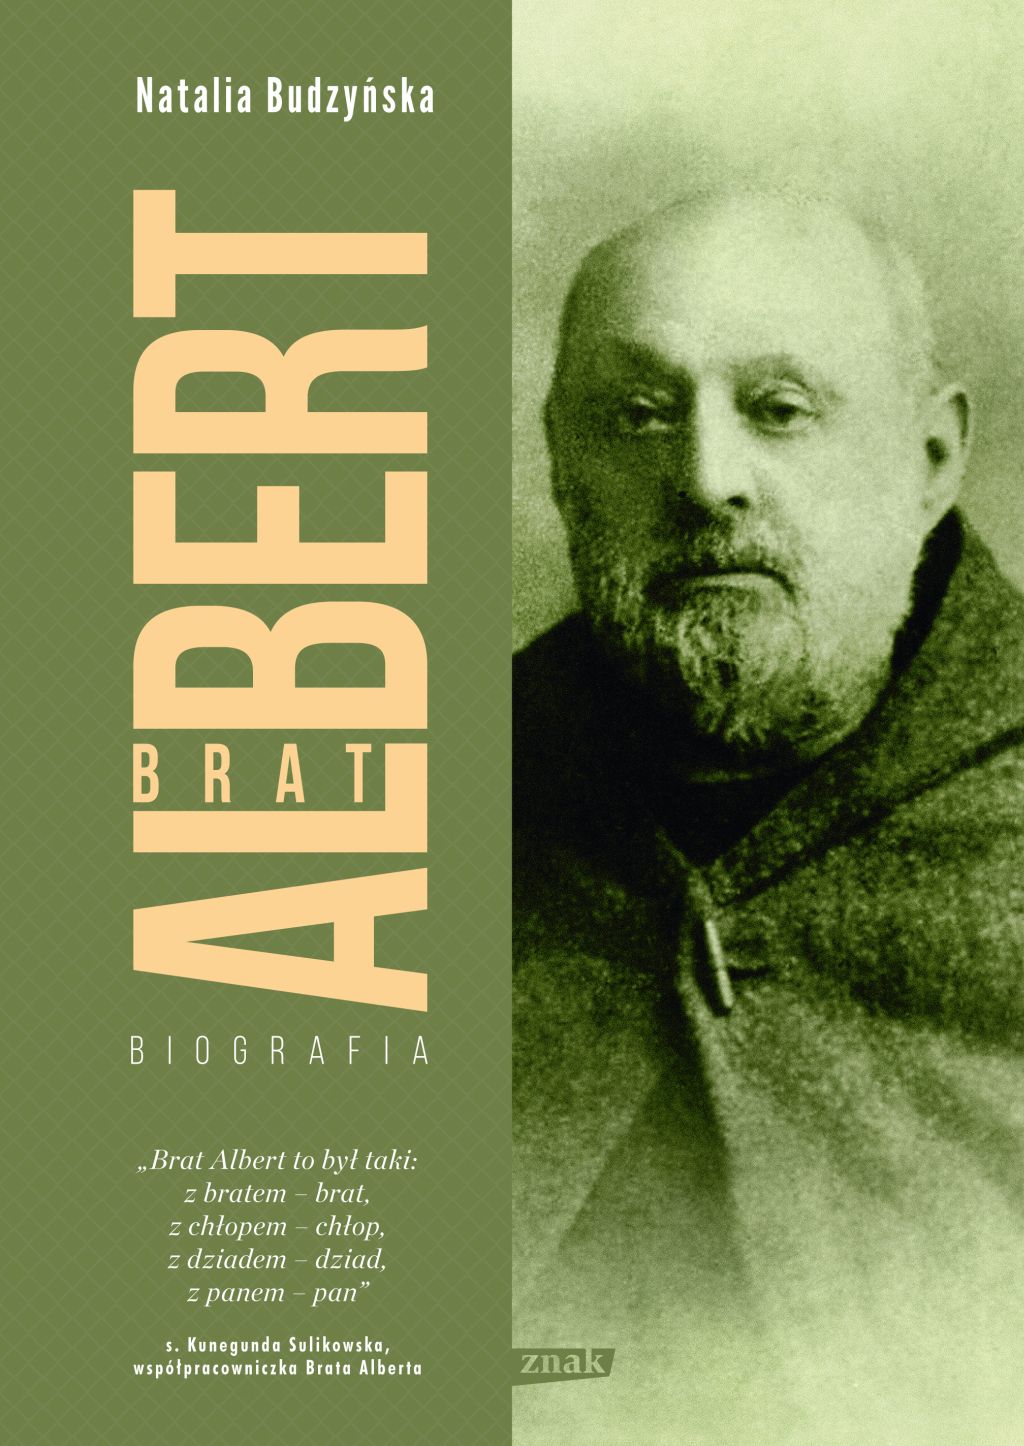 Artykuł powstał między innymi w oparciu o książkę Natalii Budzyńskiej "Brat Albert. Biografia" wydanej nakładem wydawnictwa Znak.